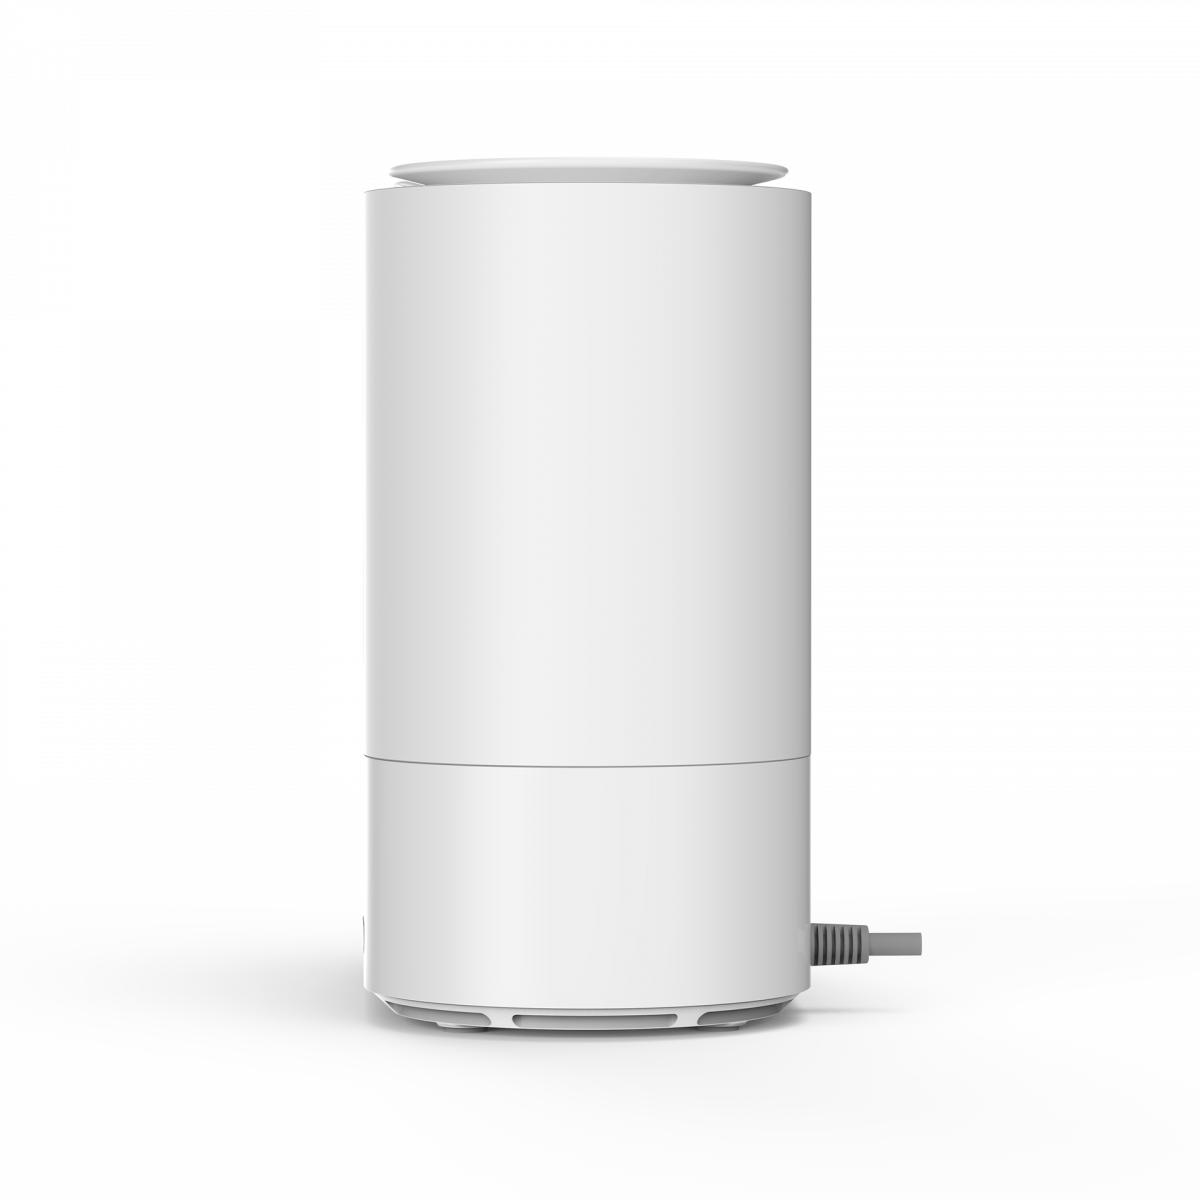 Chytrý zvlhčovač TESLA Smart Humidifier